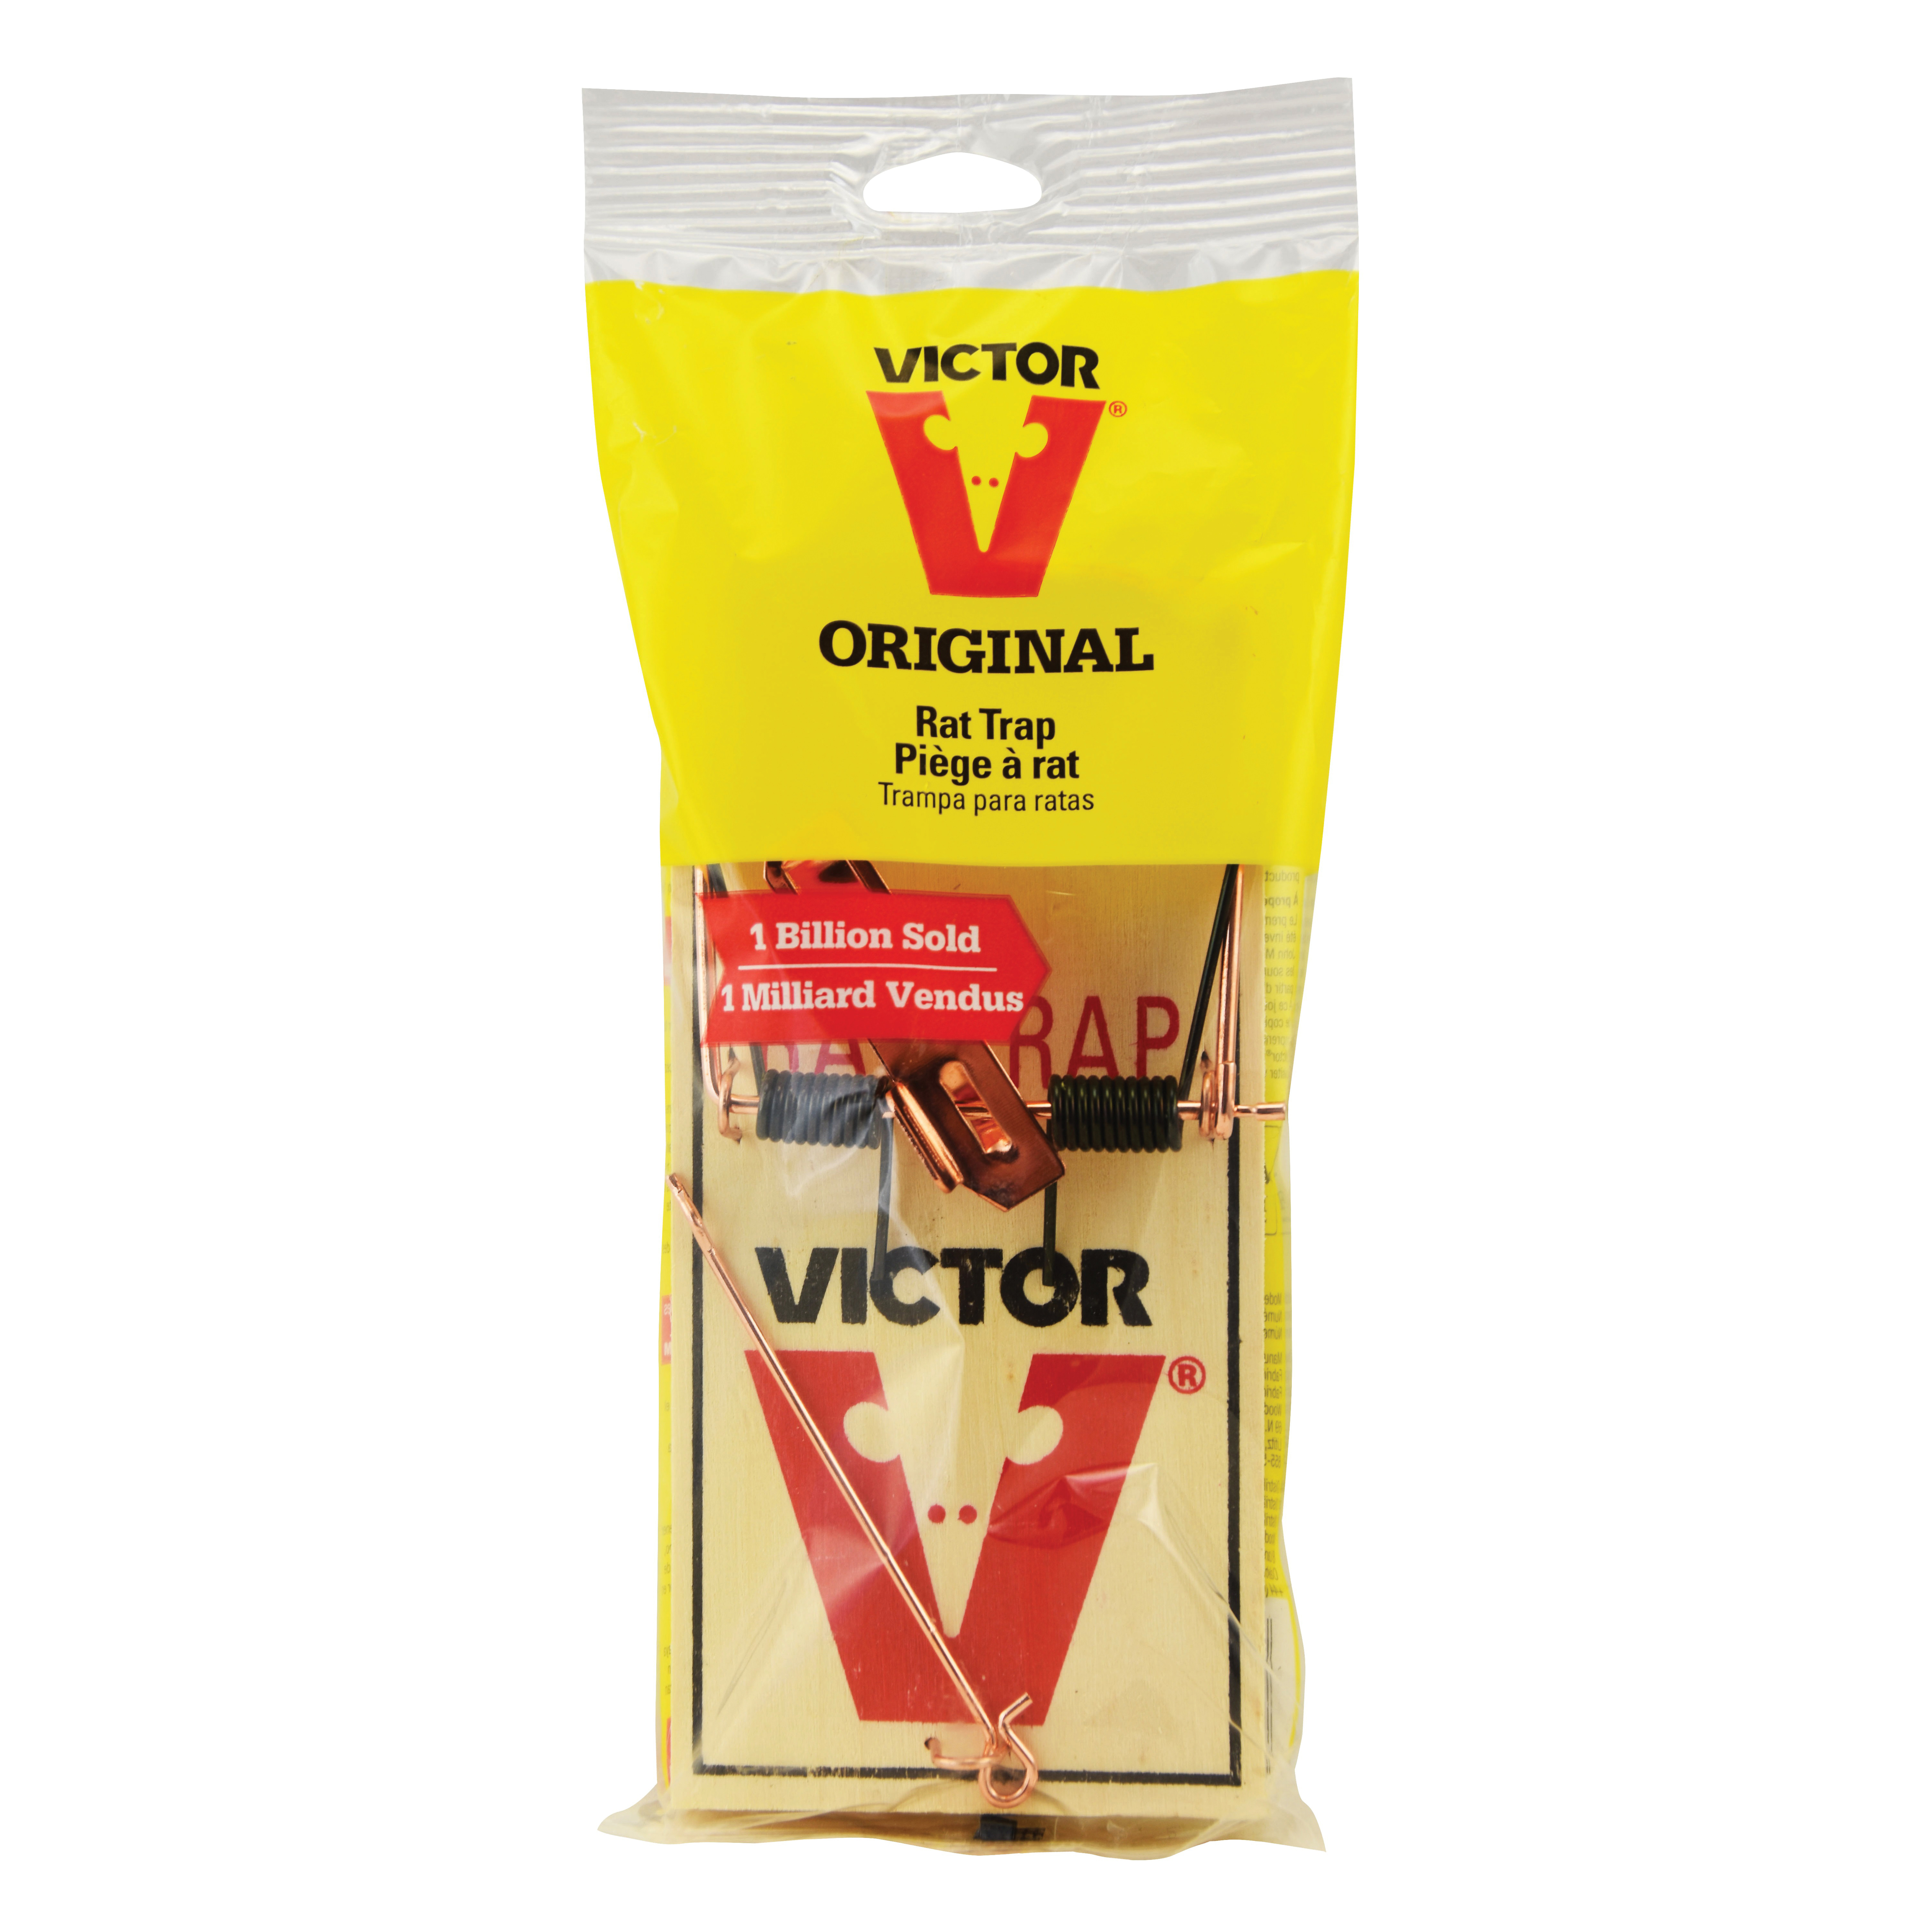 Victor Rat Trap, Original